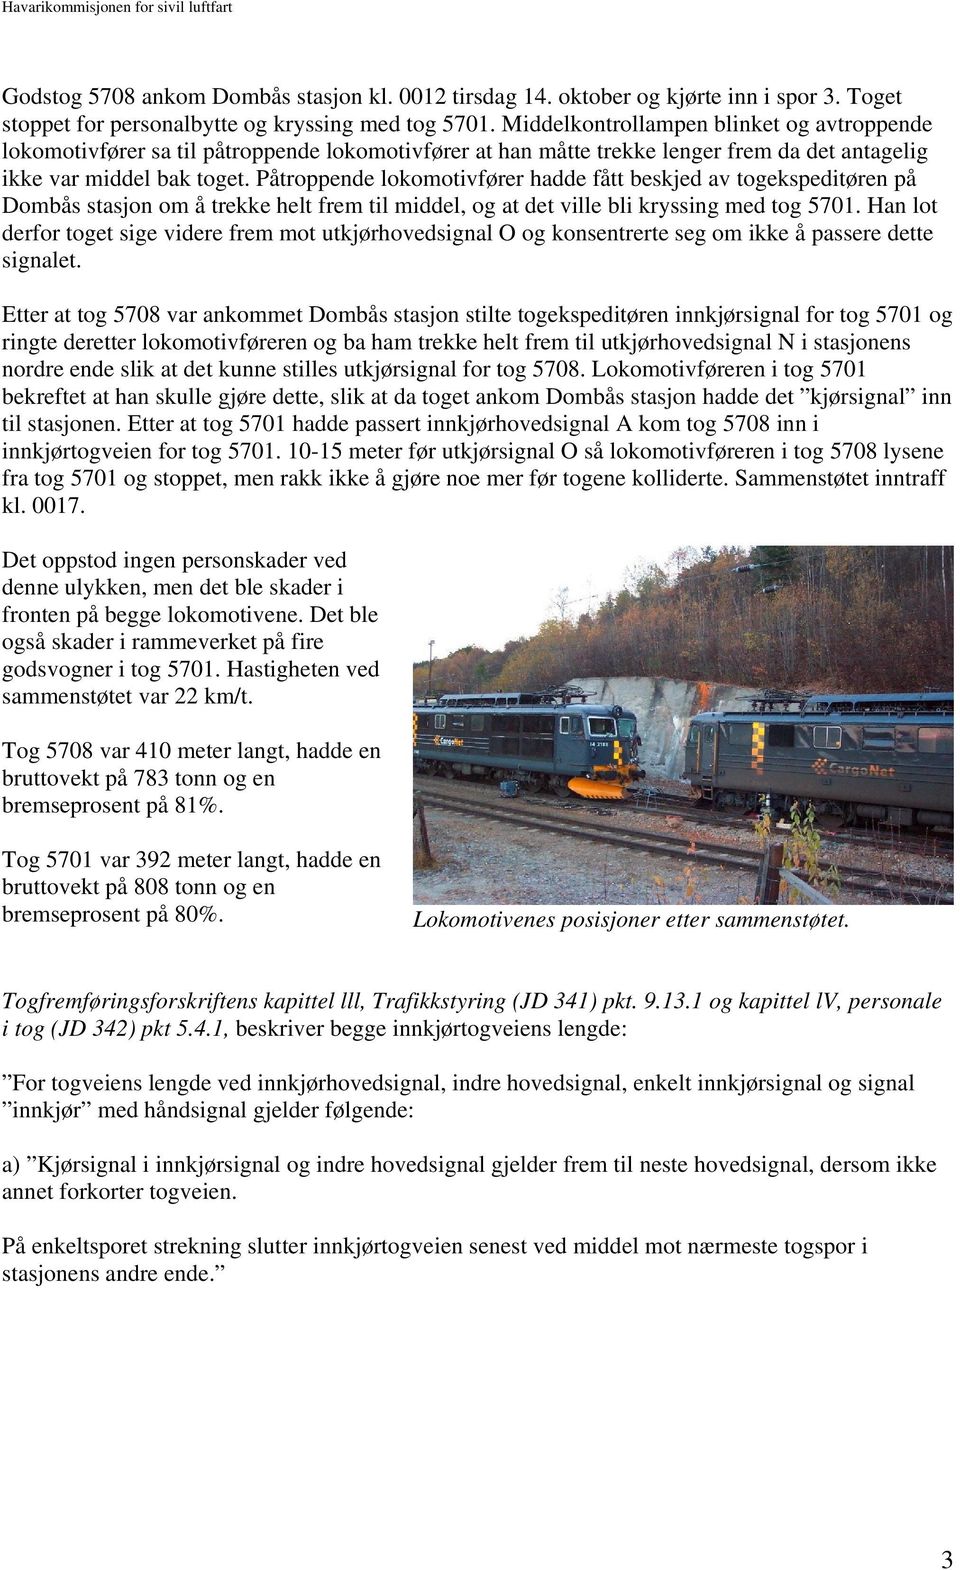 Påtroppende lokomotivfører hadde fått beskjed av togekspeditøren på Dombås stasjon om å trekke helt frem til middel, og at det ville bli kryssing med tog 5701.